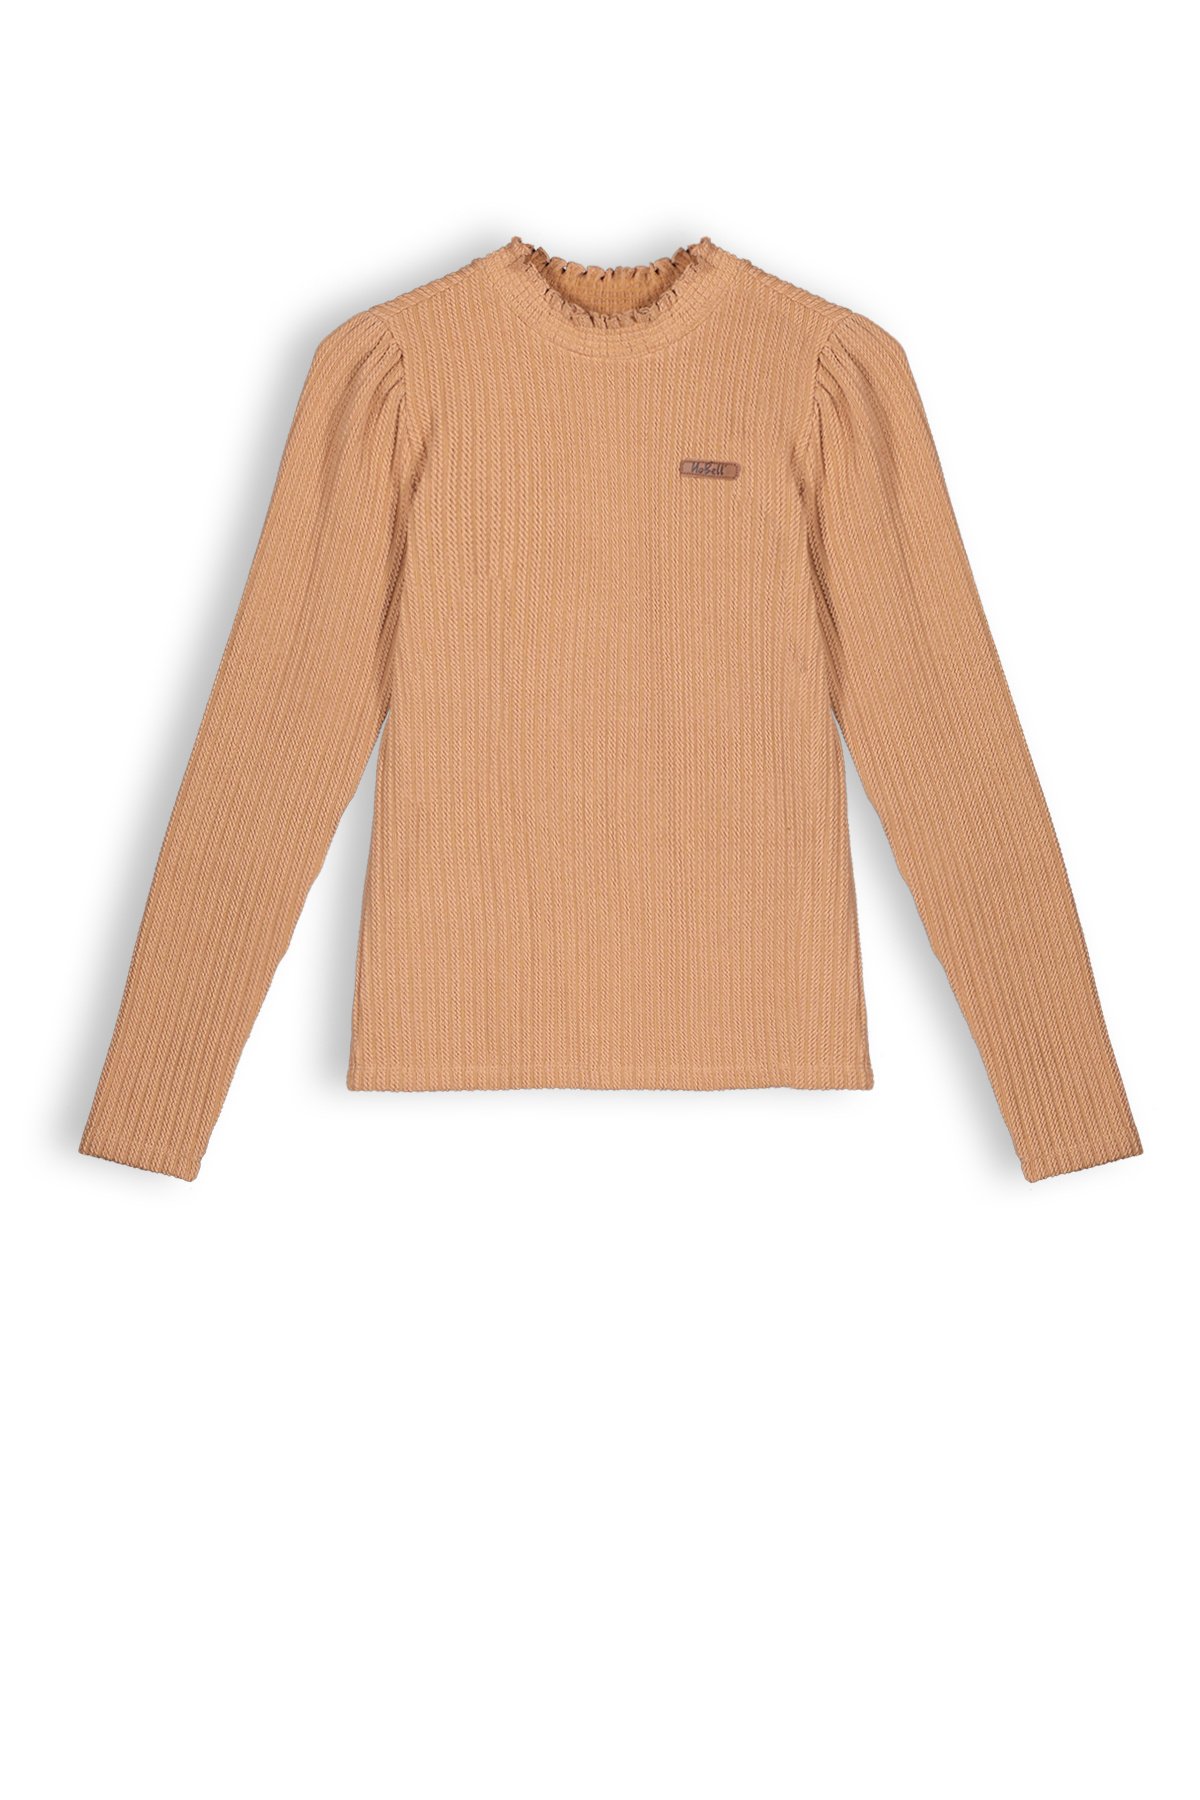 Meisjes shirt jersey - Kobus - Animal bruin